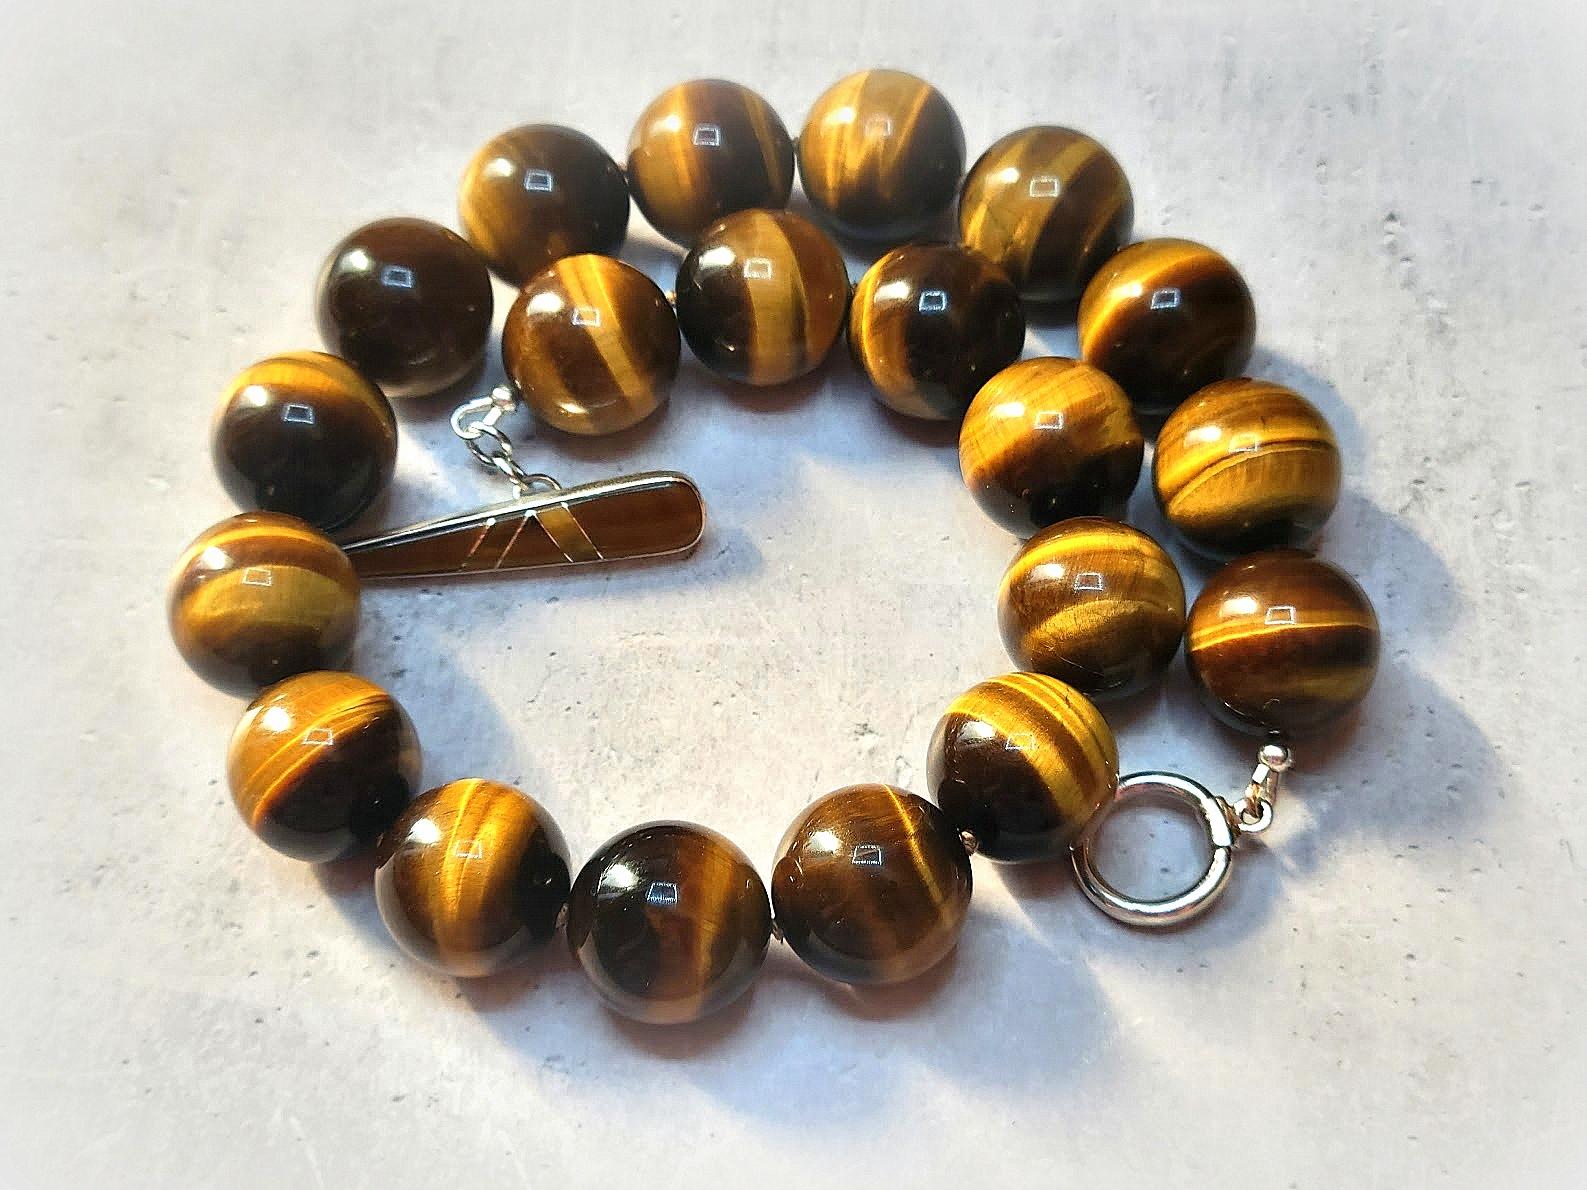 La longueur du collier est de 18 pouces (45,7 cm). La taille des perles rondes lisses est de 20 mm.
Les tons des perles sont un merveilleux brun doré, un or caramel et des tons chauds soyeux et magnifiques.
La couleur est authentique et naturelle.